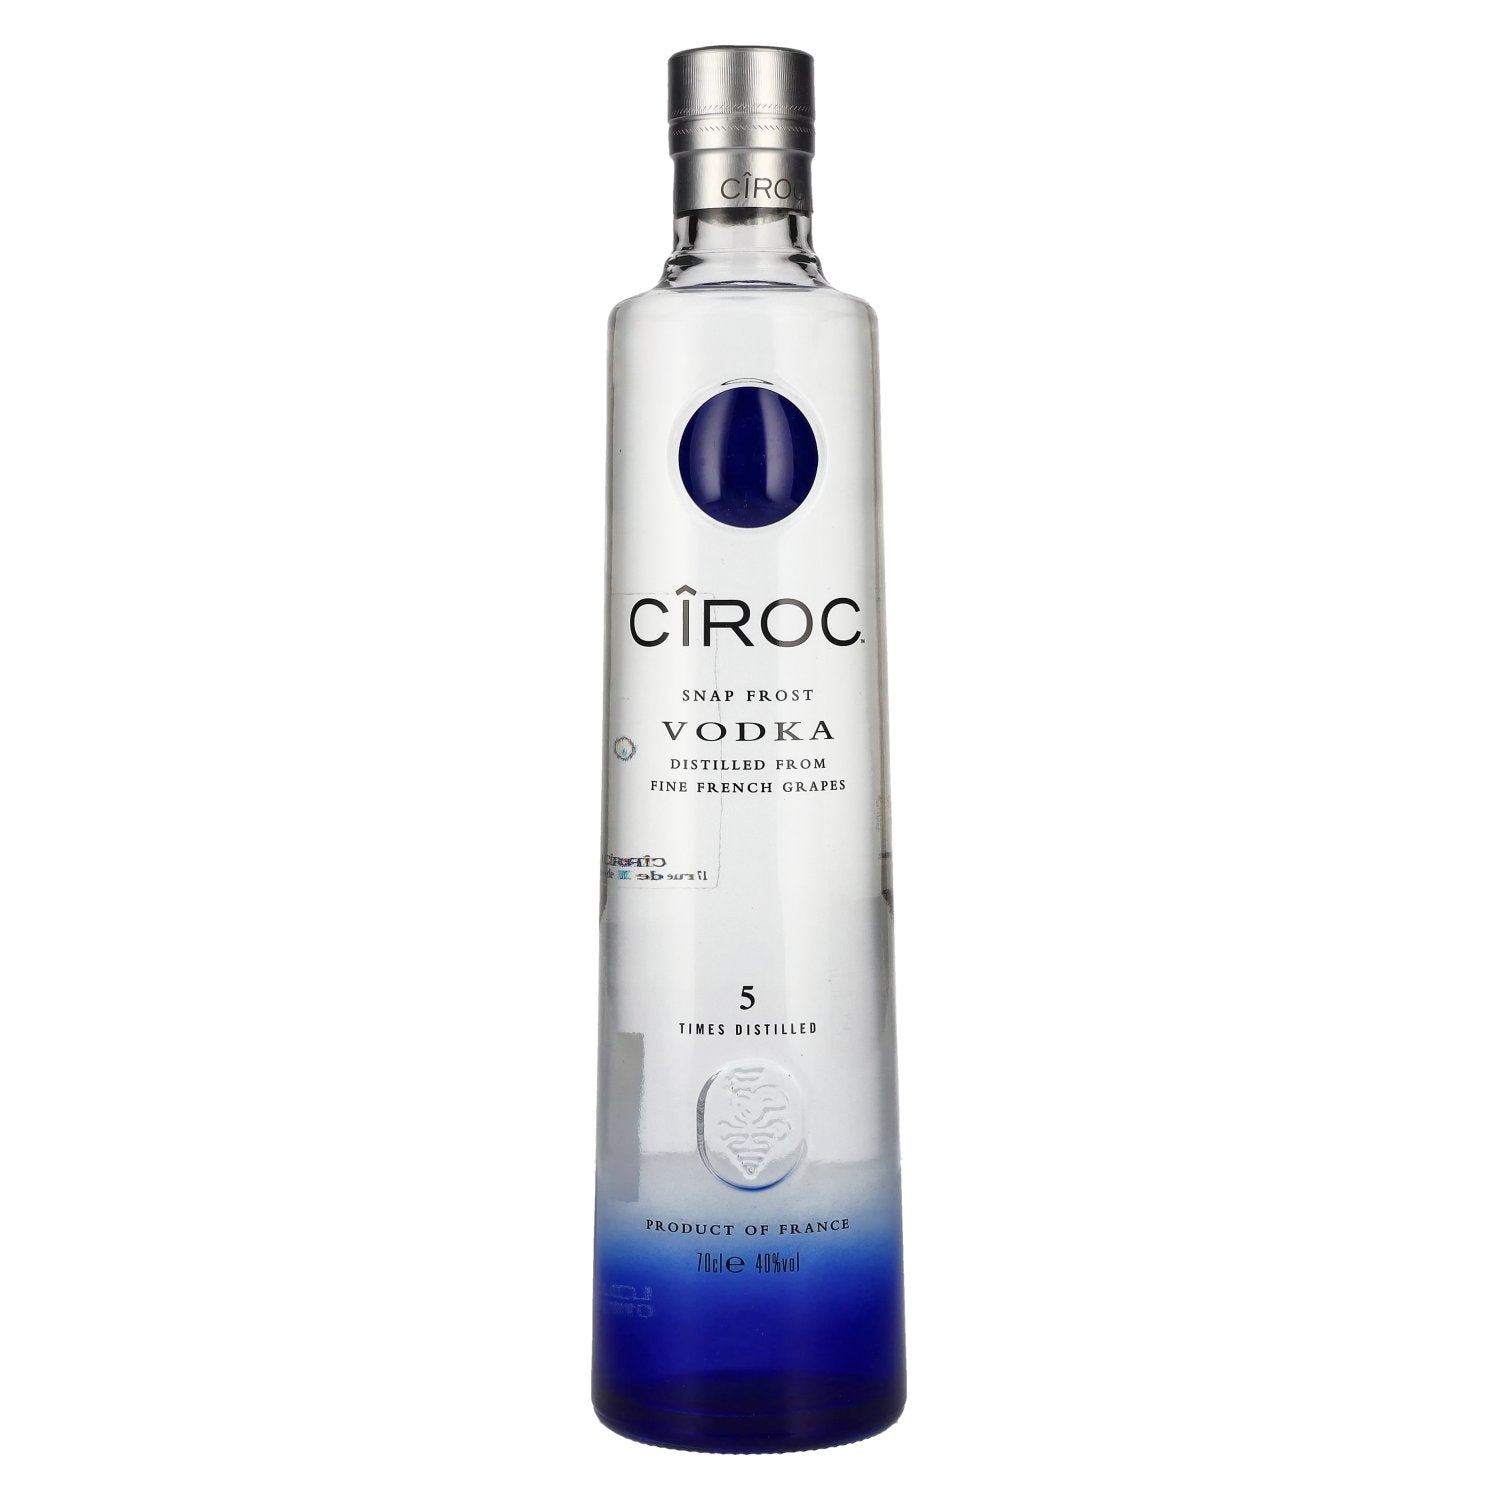 Ciroc SNAP FROST Vodka 40% Vol. 0,7l